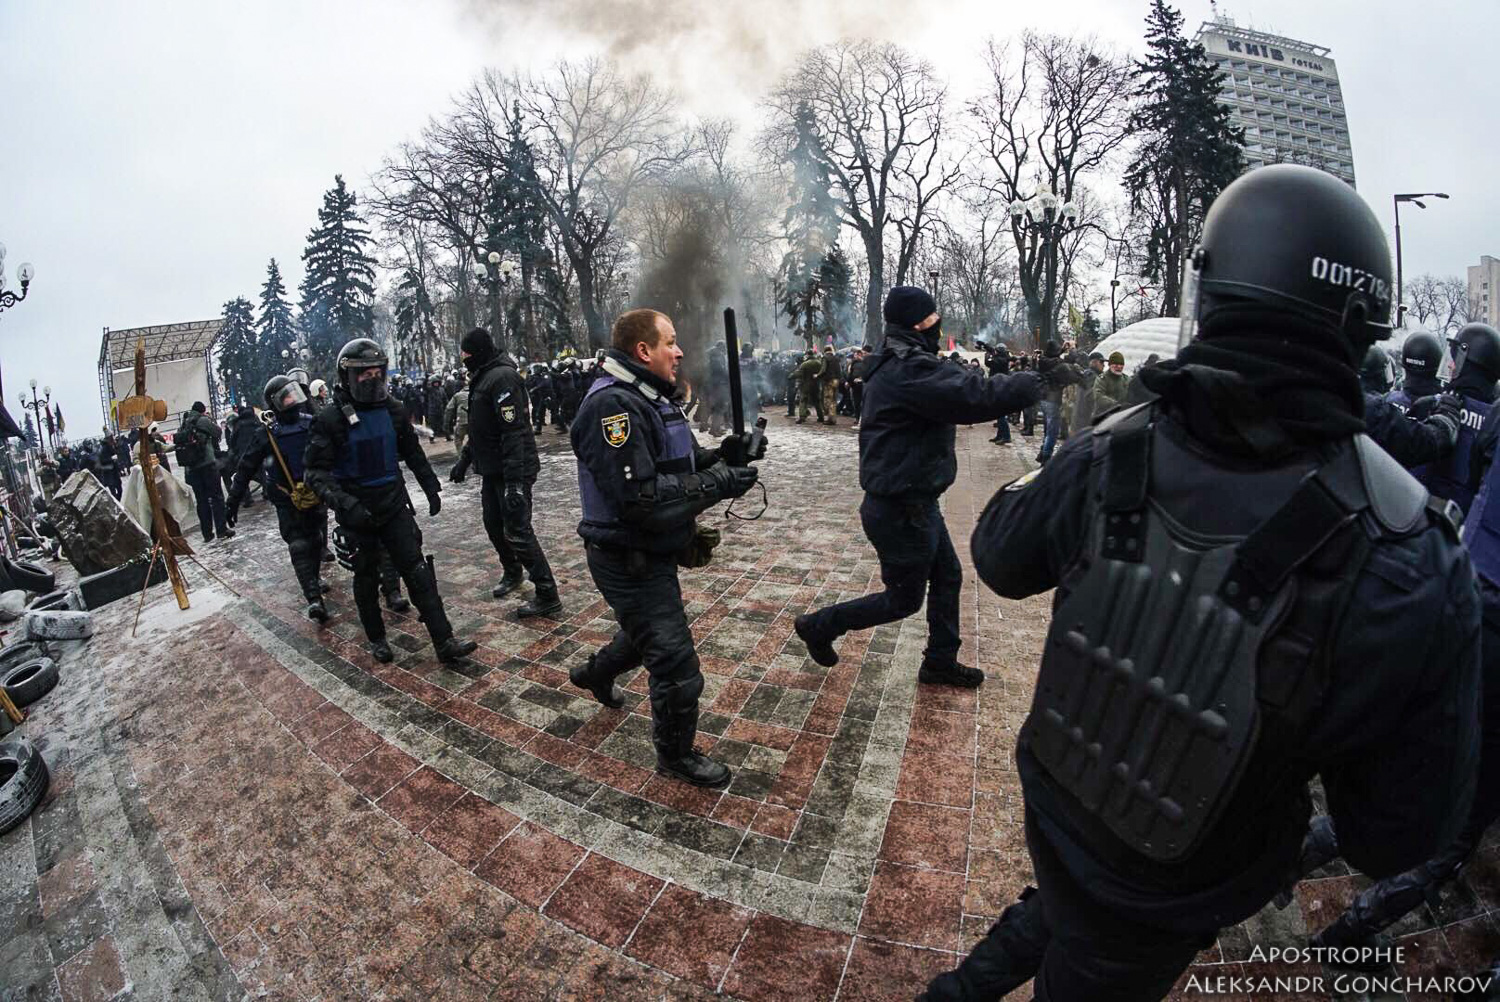 Ukraine News in brief. Tuesday 16 January. [Ukrainian sources] 0f26bce0d13d39dc2de710246ac7af38